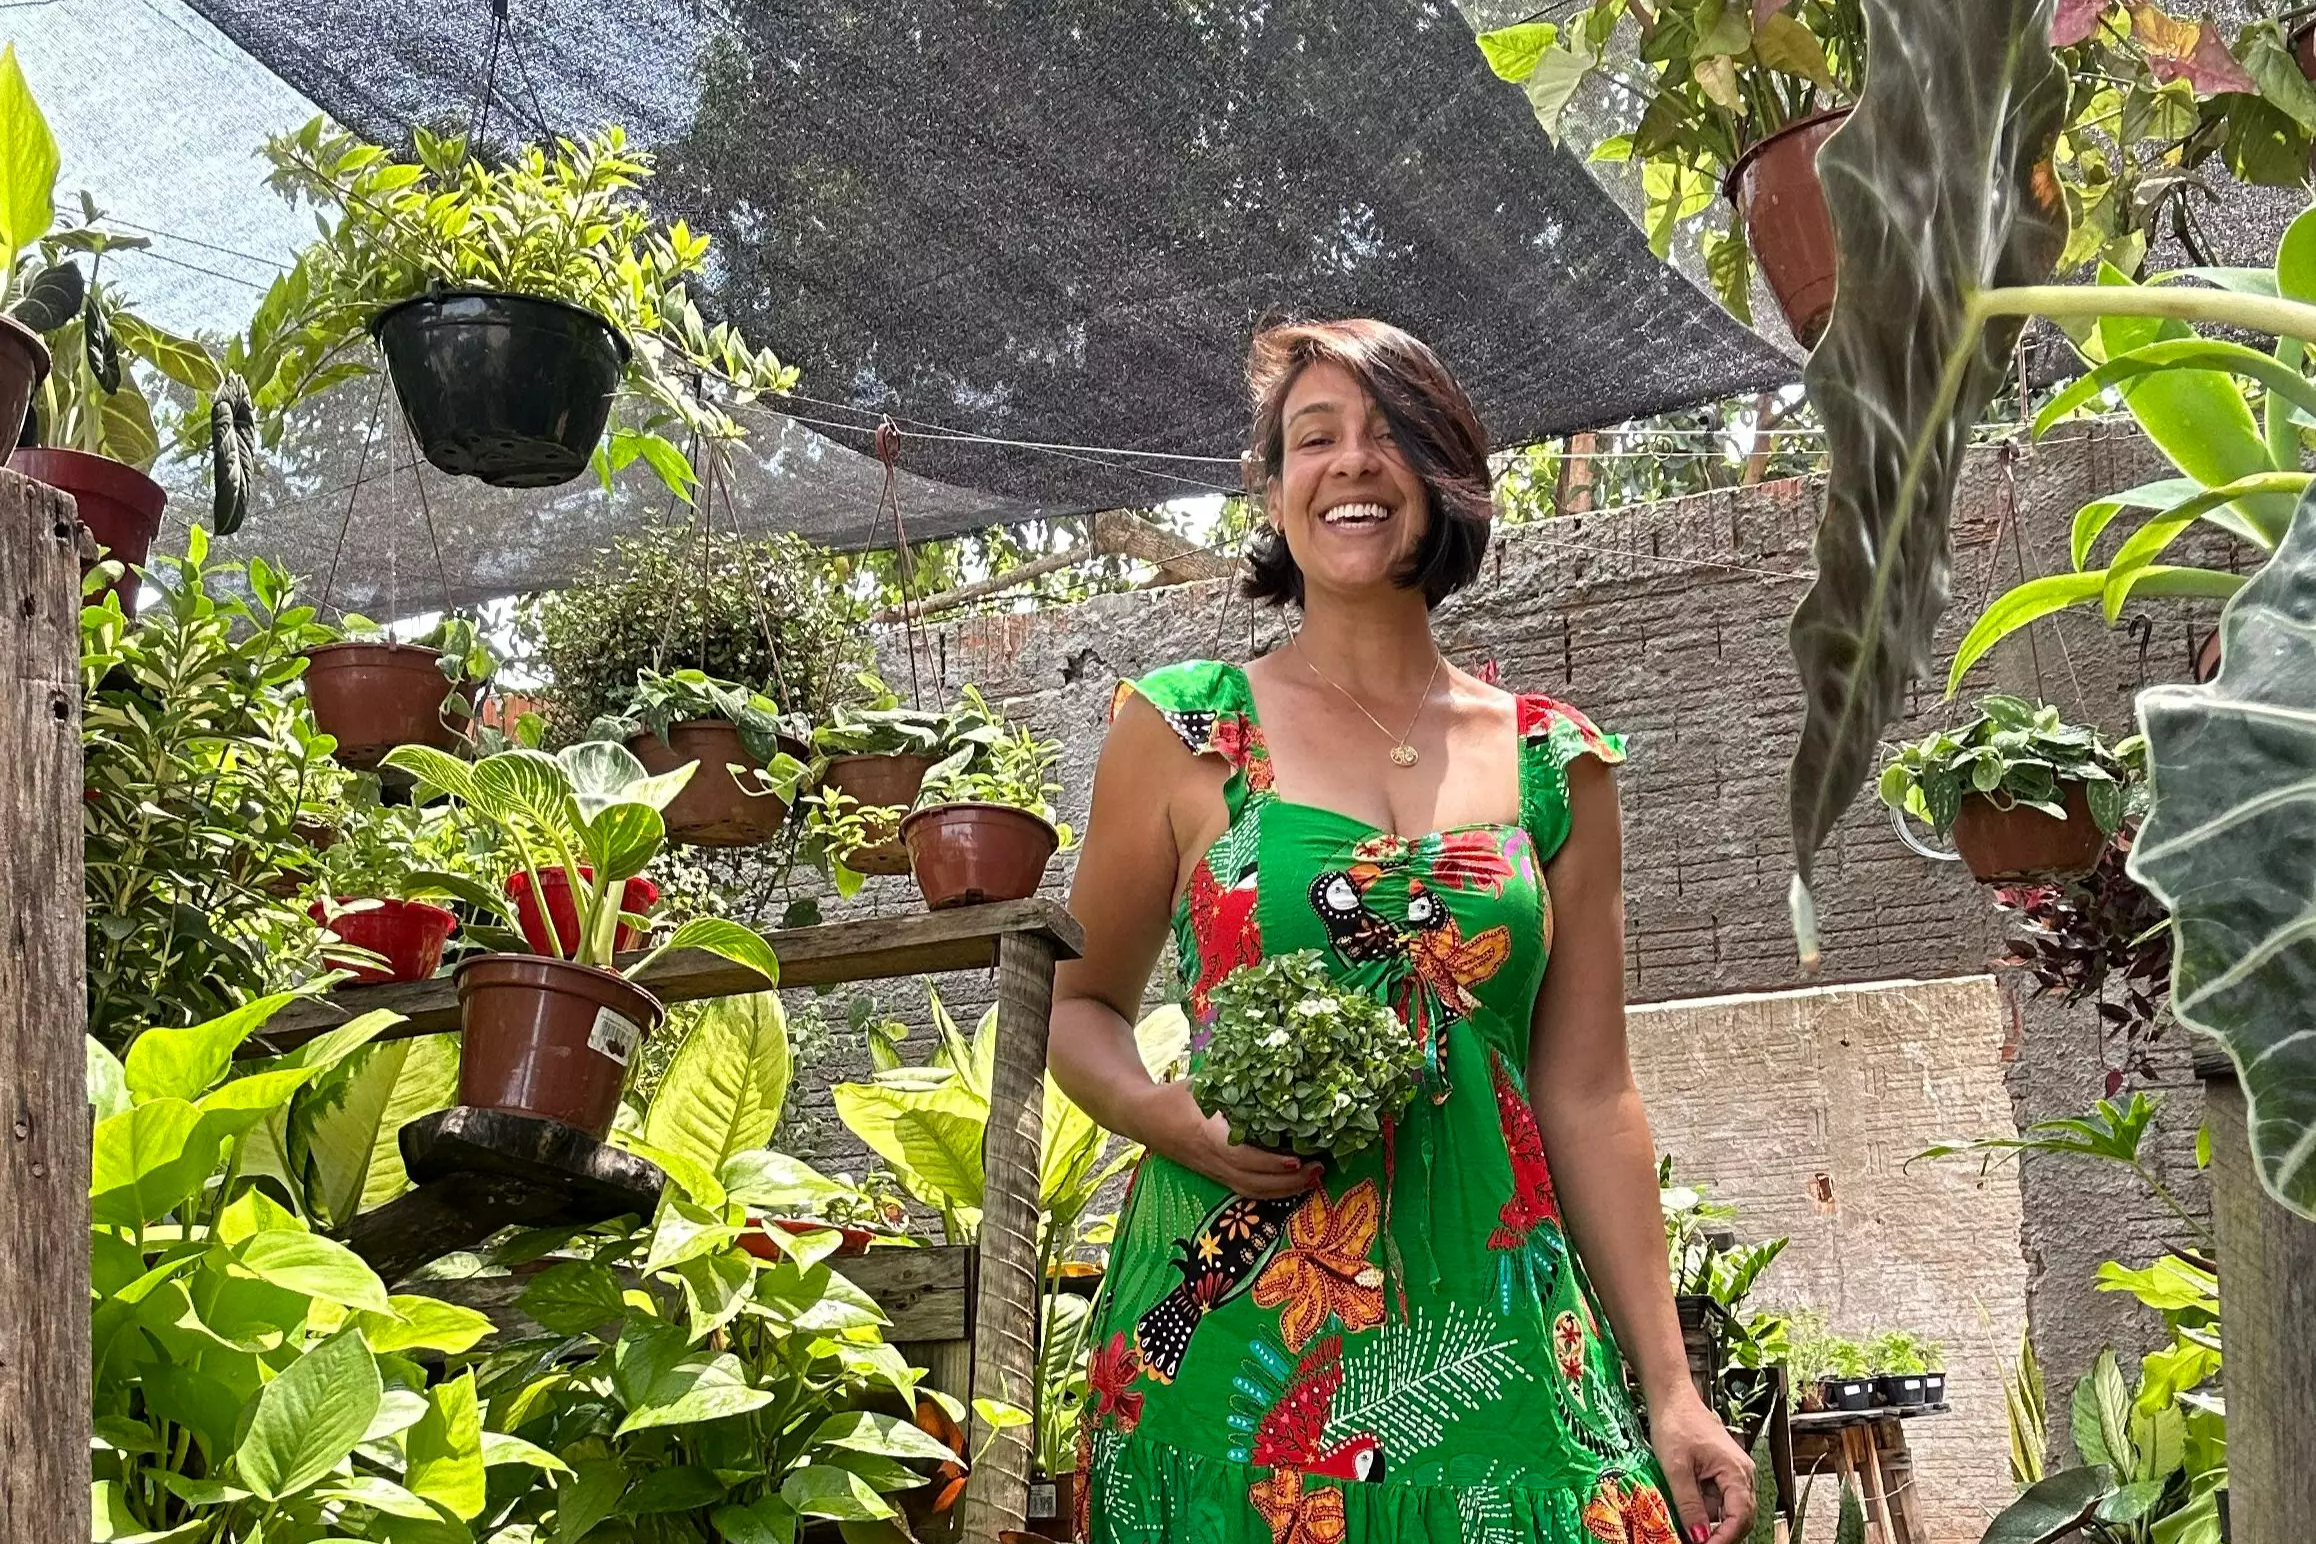 Plantas foram aliadas na depressão e hoje Lyara ensina a cuidar delas